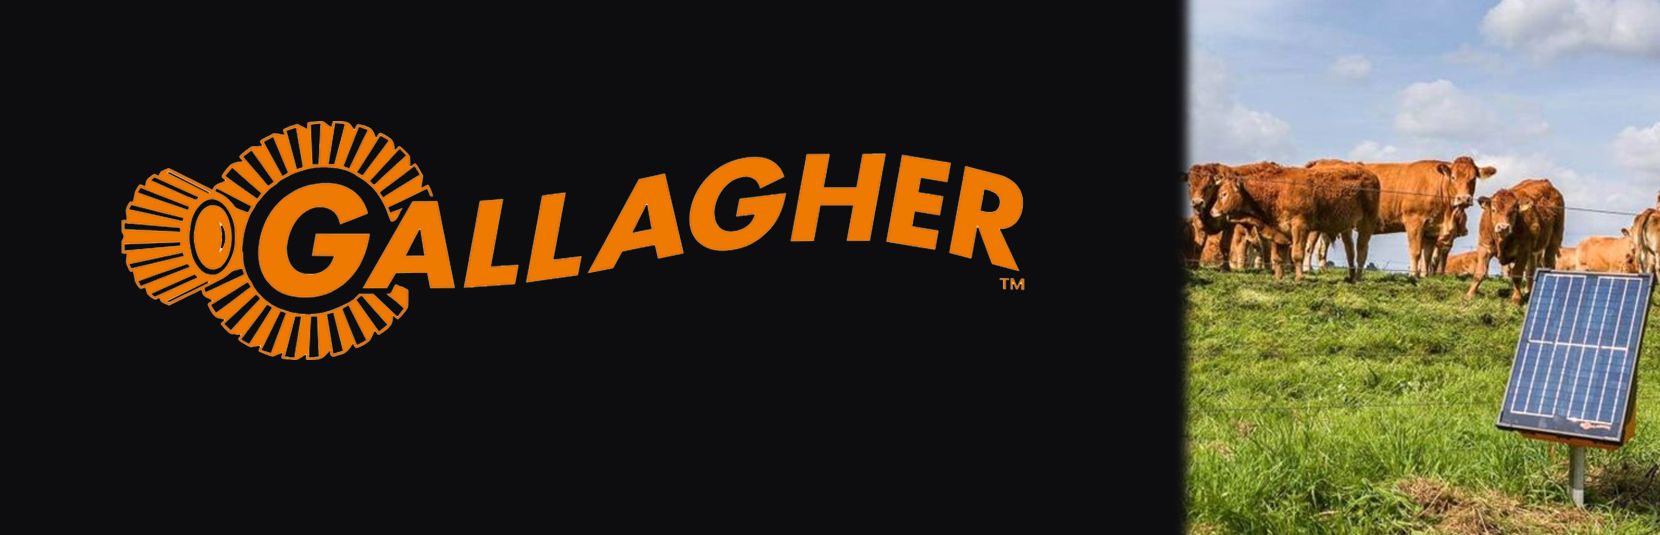 Gallagher Banner